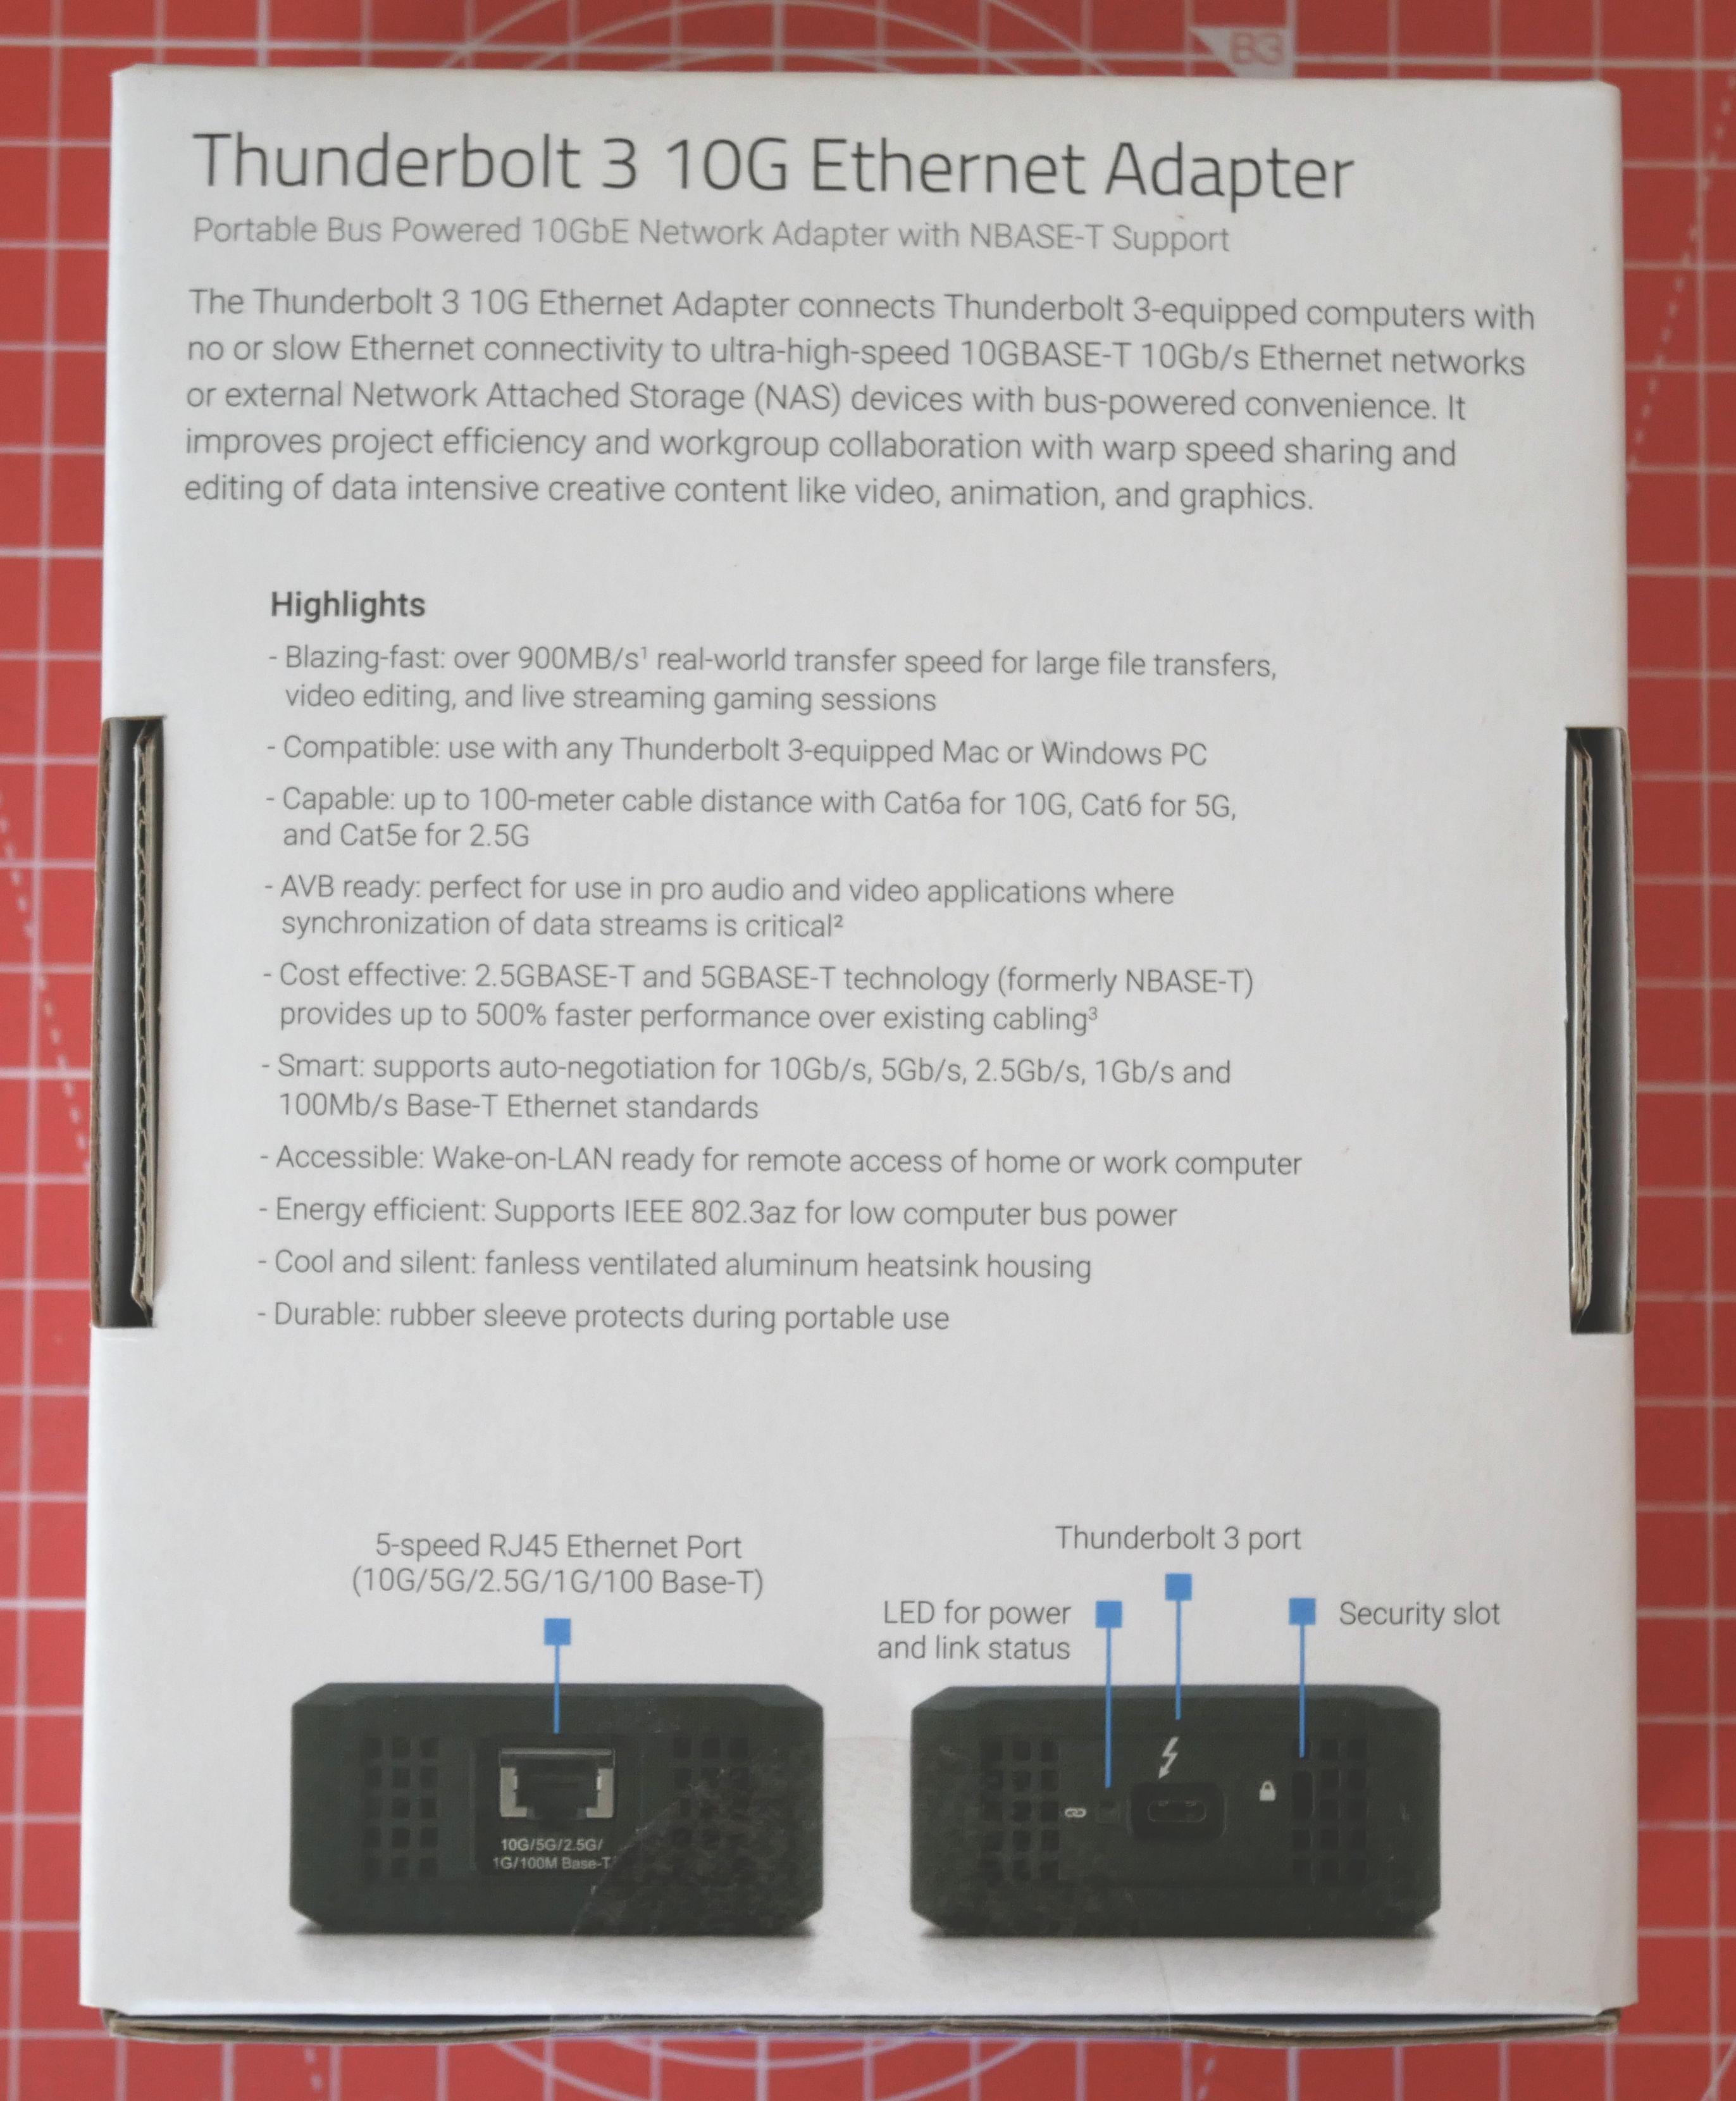 Description du produit offert par la boite de l'adaptateur Thunderbold 3 vers Ethernet 10G de OWC